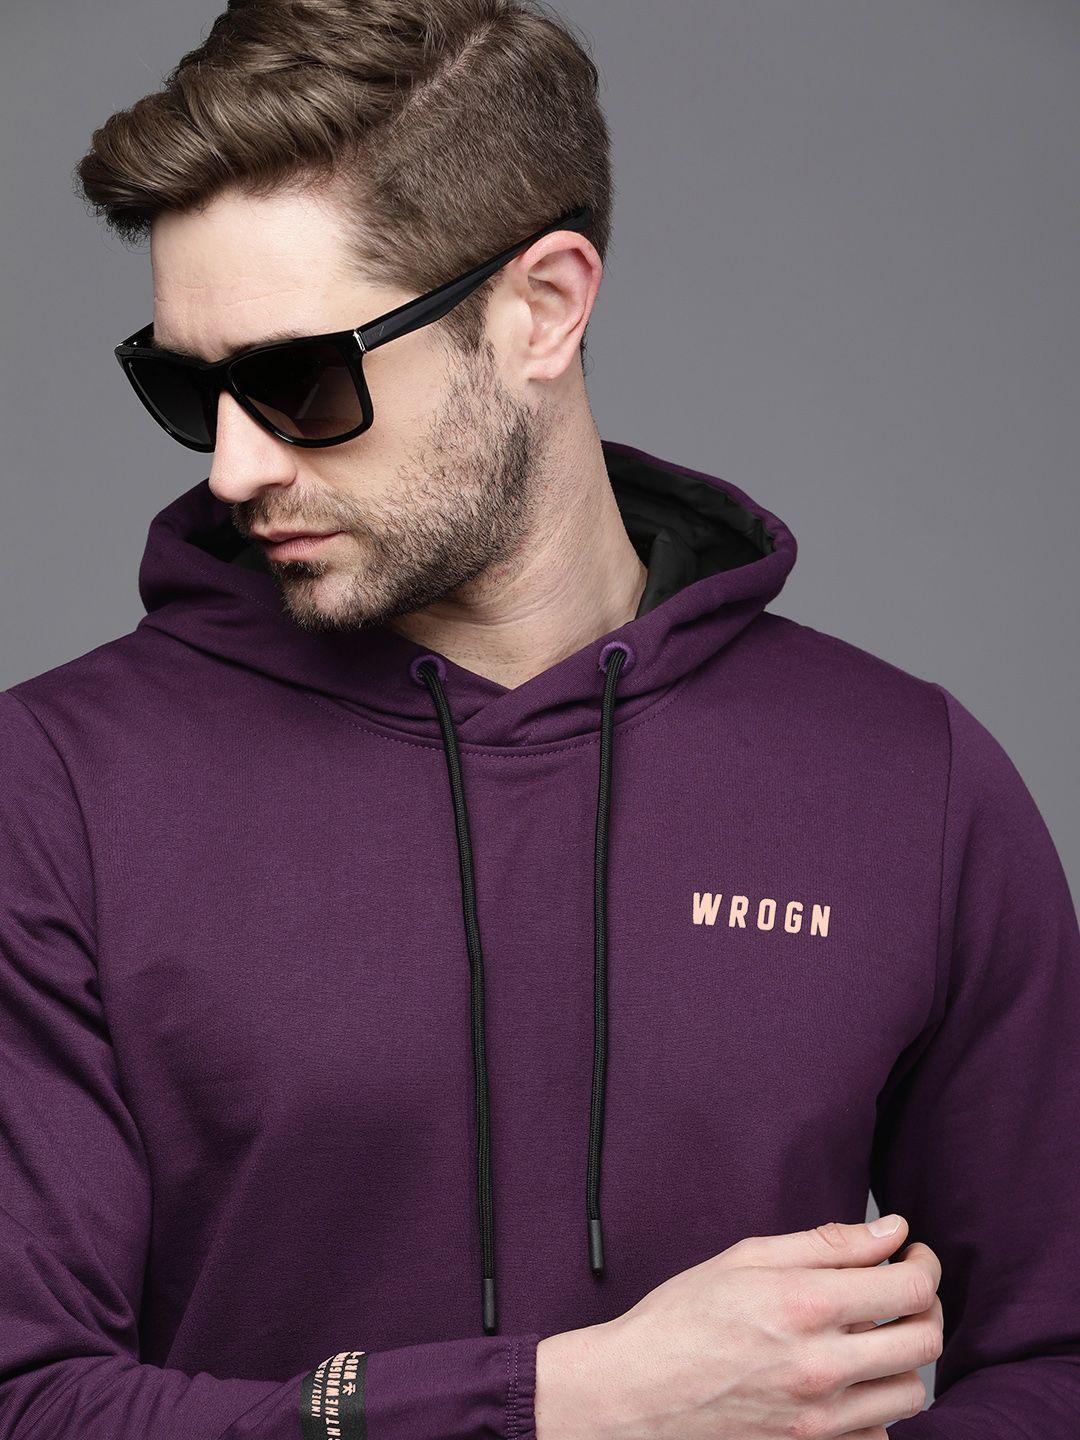 wrogn men purple brand logo printed hooded sweatshirt